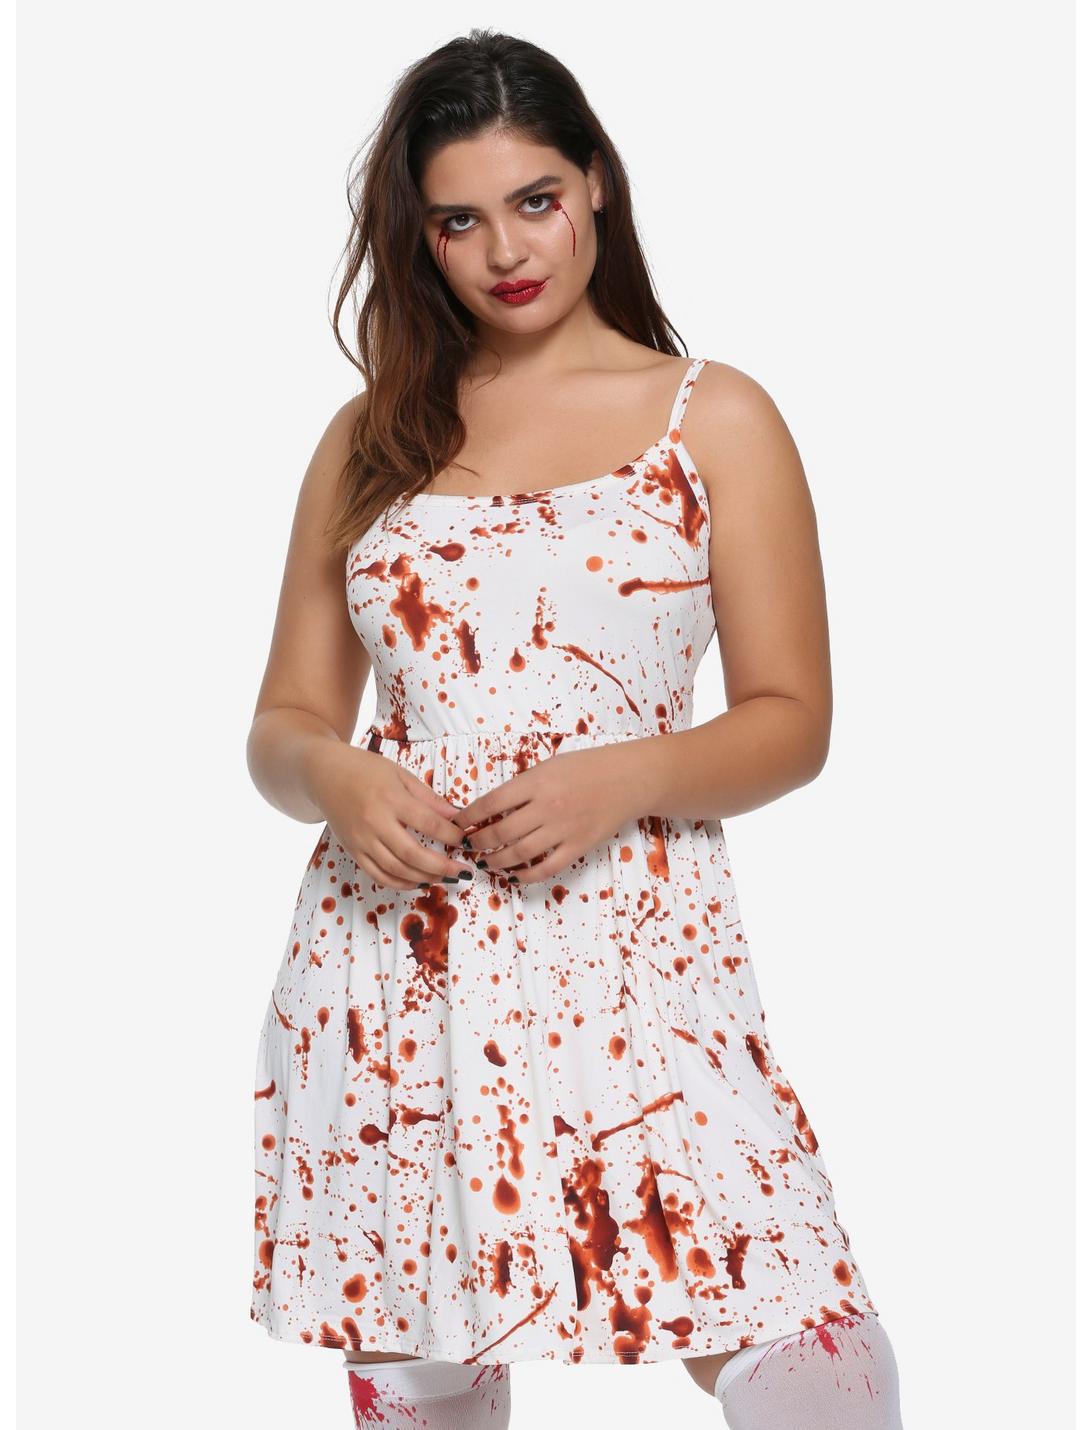 Blood Splatter Dress Plus Size, RED, hi-res